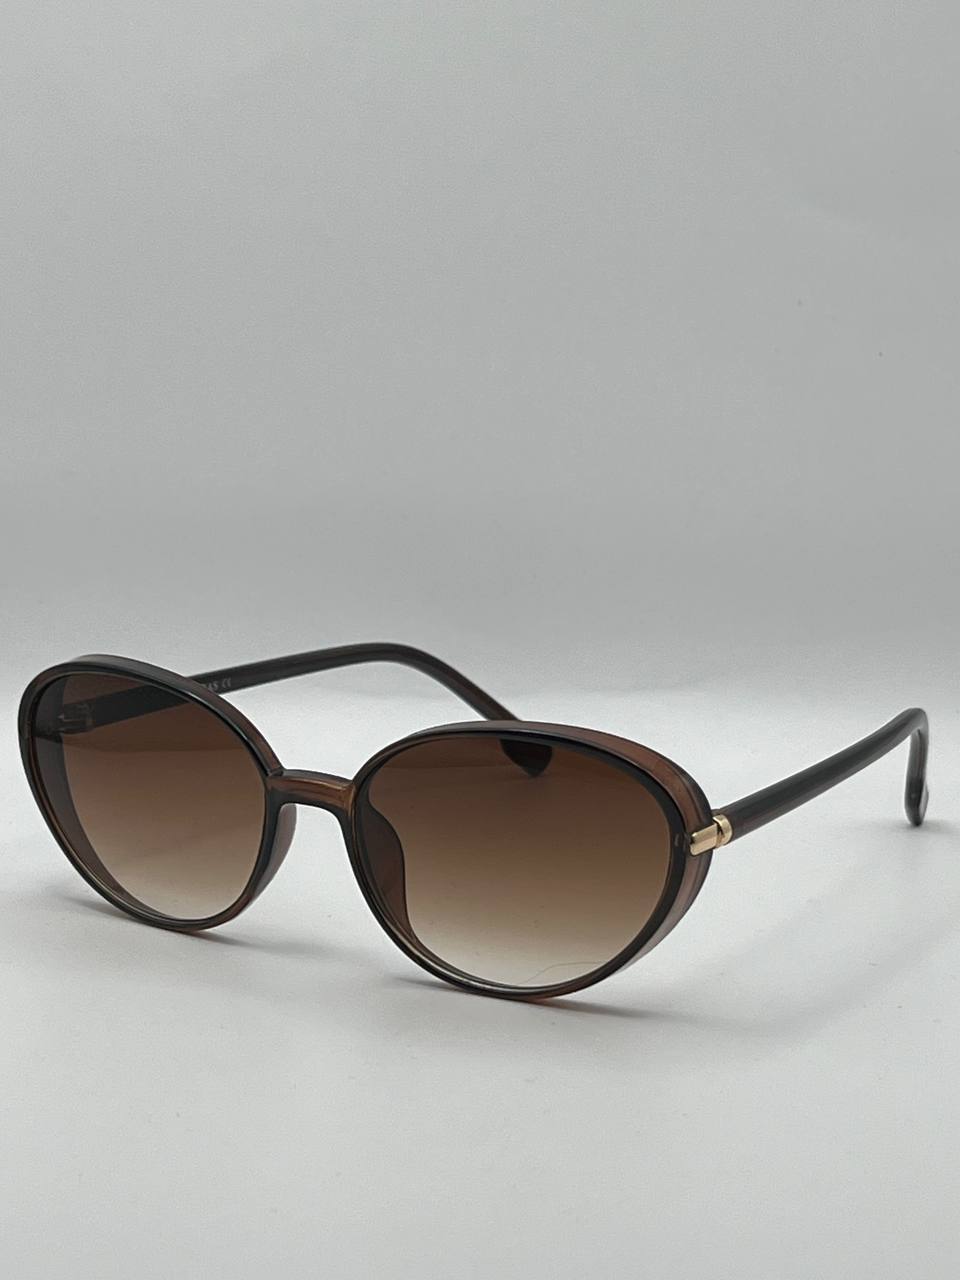 Солнцезащитные очки женские SunGold Кошка-6 коричневые